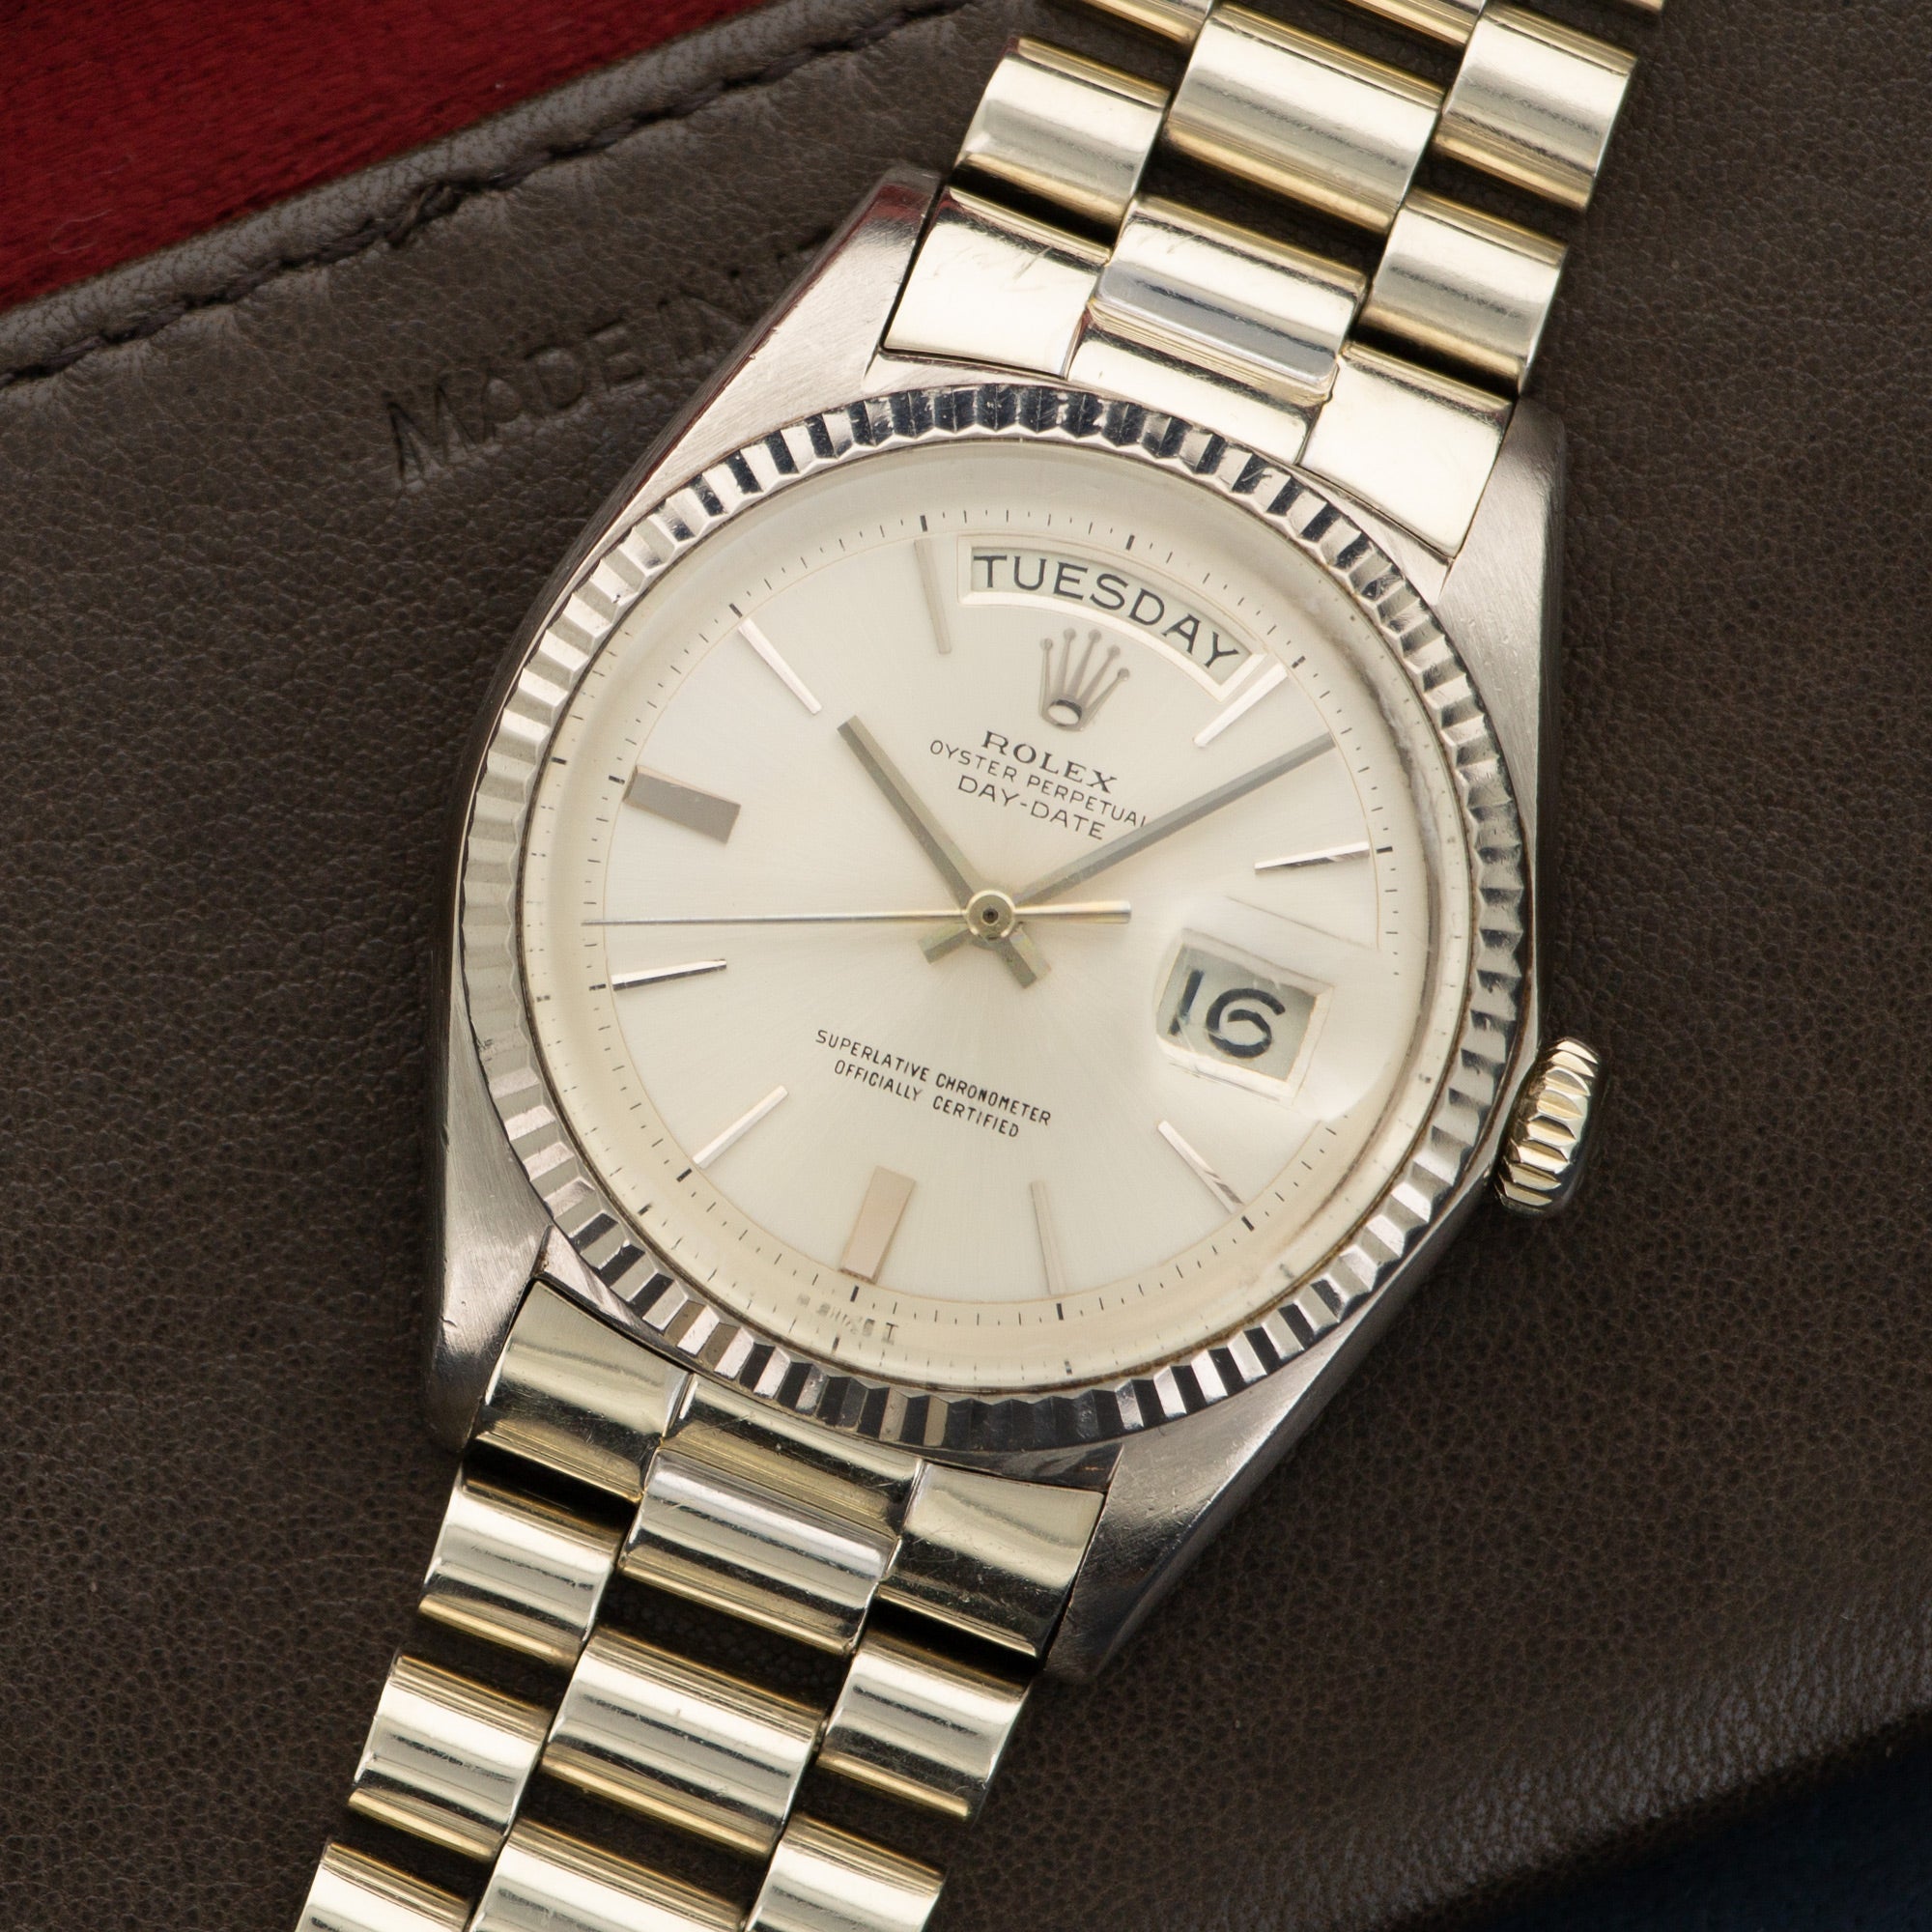 Rolex - Rolex White Gold Day-Date Watch Ref. 1803 - The Keystone Watches